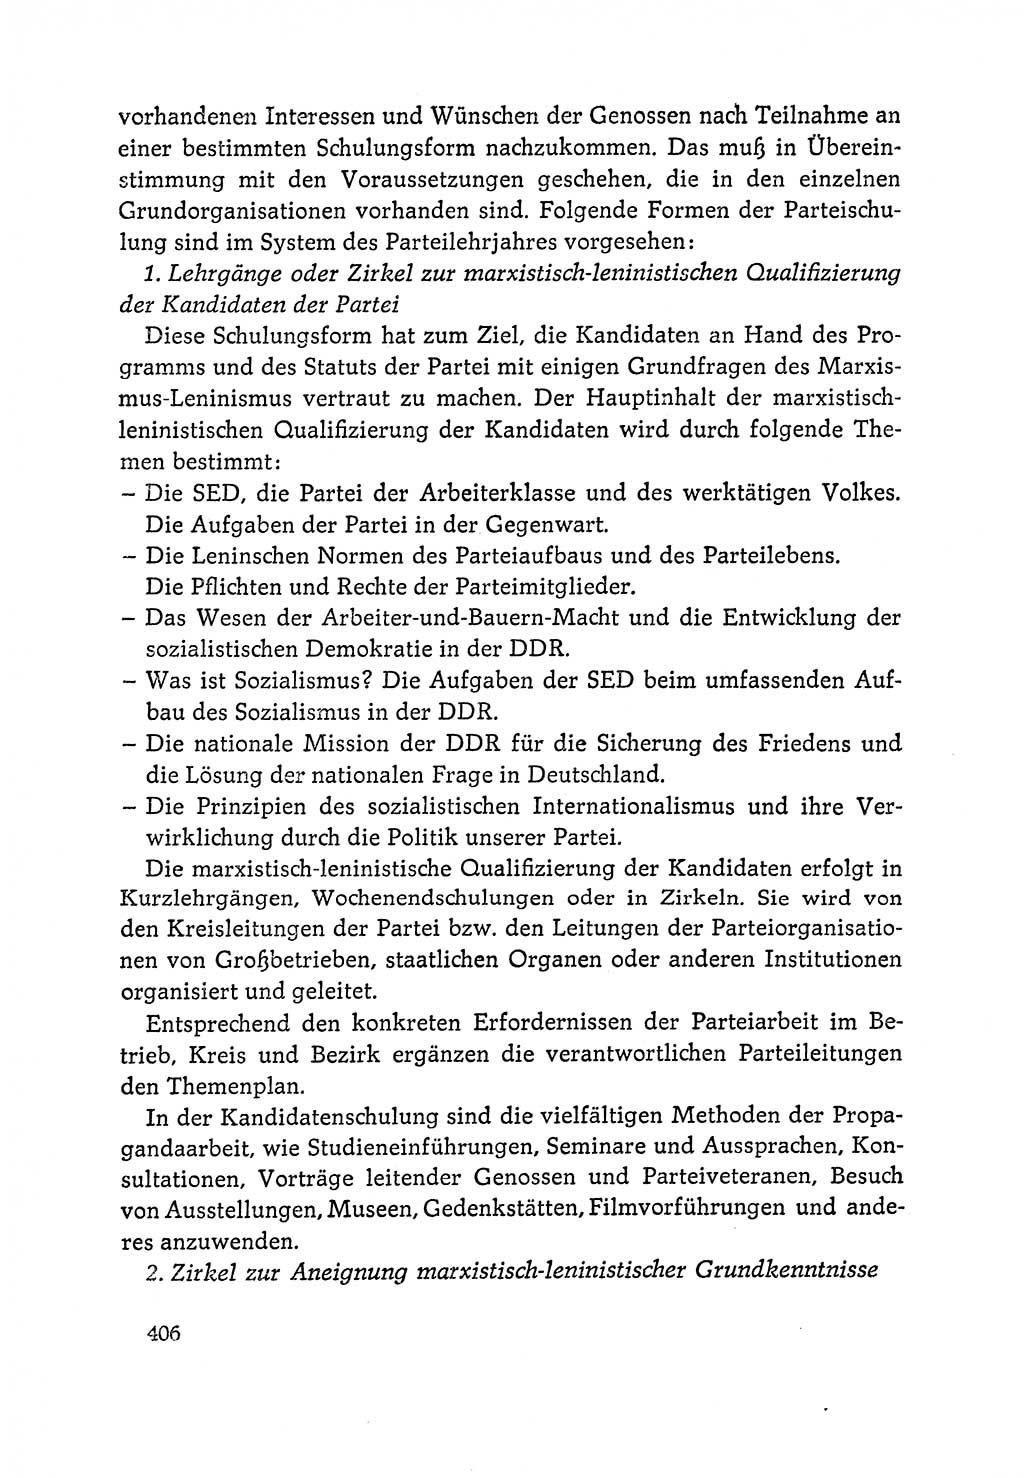 Dokumente der Sozialistischen Einheitspartei Deutschlands (SED) [Deutsche Demokratische Republik (DDR)] 1964-1965, Seite 406 (Dok. SED DDR 1964-1965, S. 406)